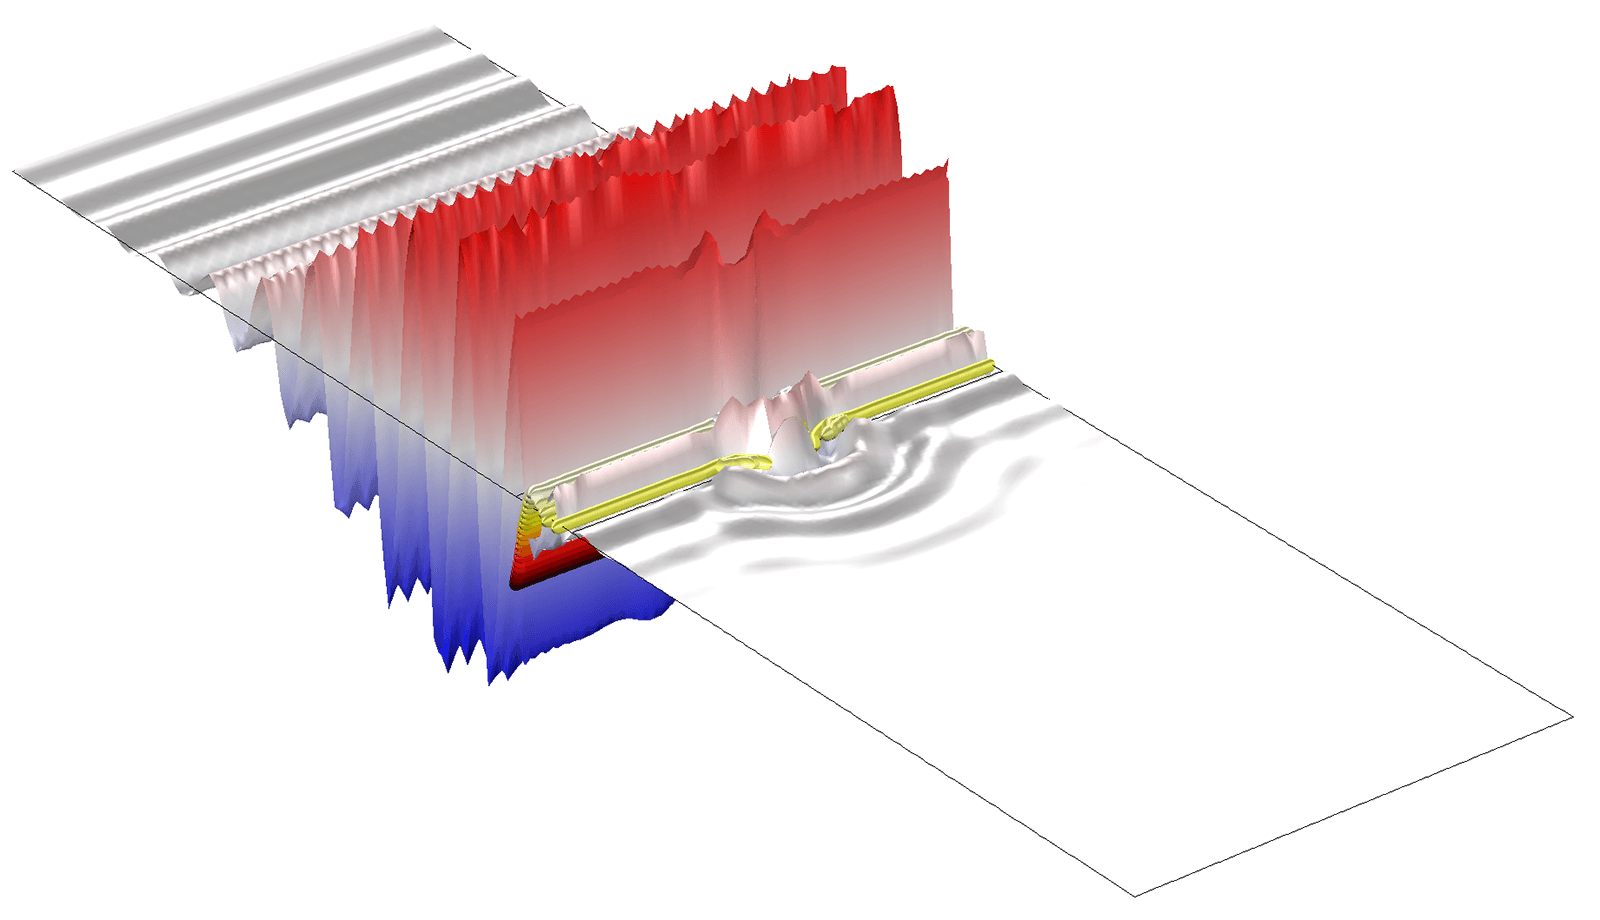 Un pulso de ondas electromagnéticas se propaga a través de un agujero sub-longitud de onda en una placa dieléctrica dispersiva.